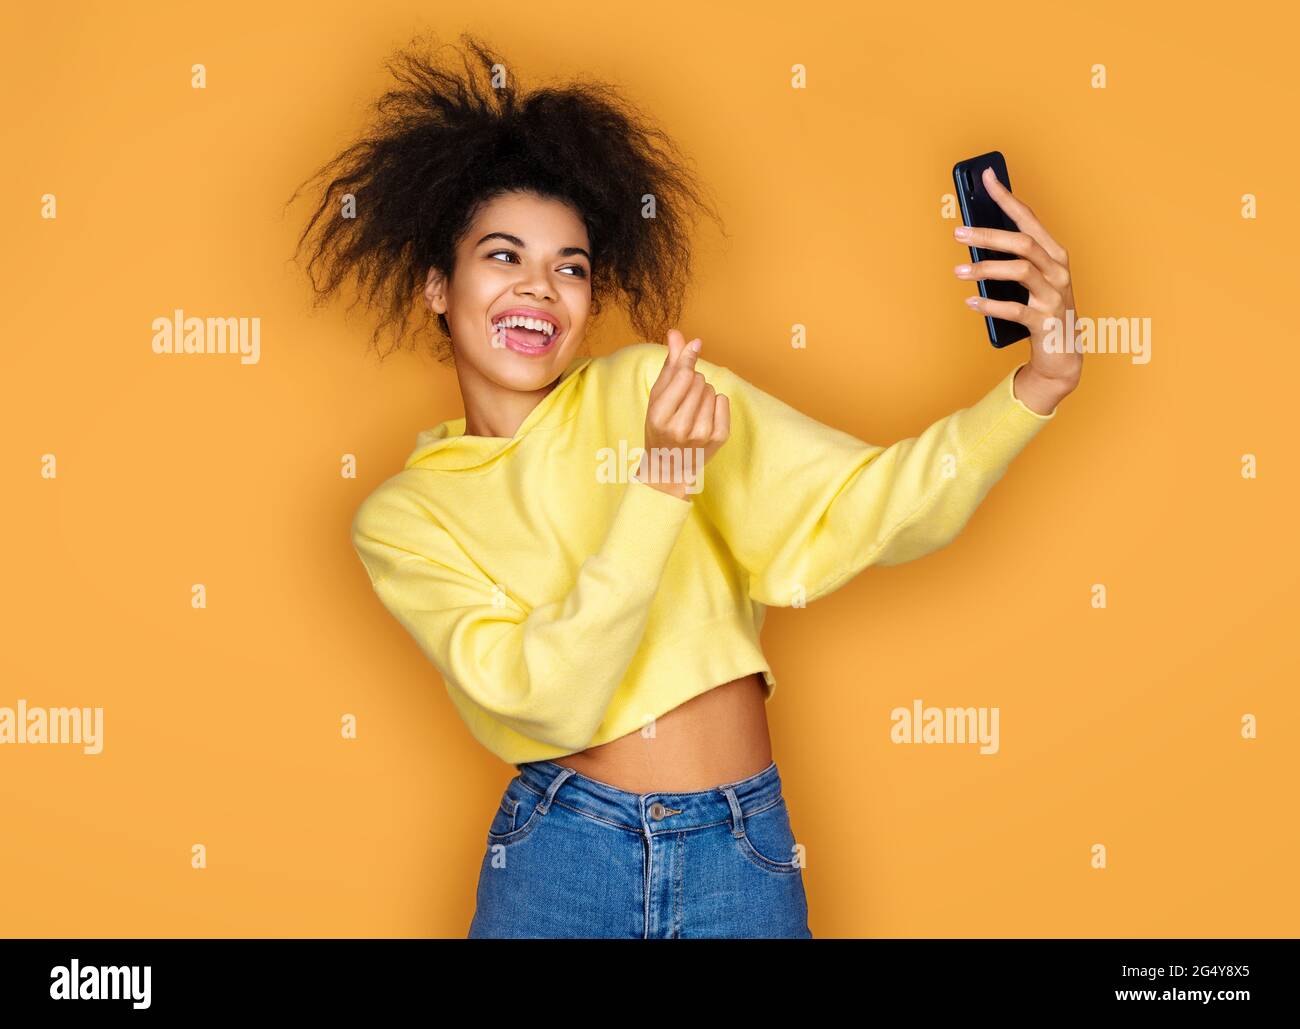 Junges Mädchen macht koreanische Liebe Zeichen und nimmt Selfie-Foto, Blick auf Telefon. Foto von afroamerikanischen Mädchen auf gelbem Hintergrund Stockfoto